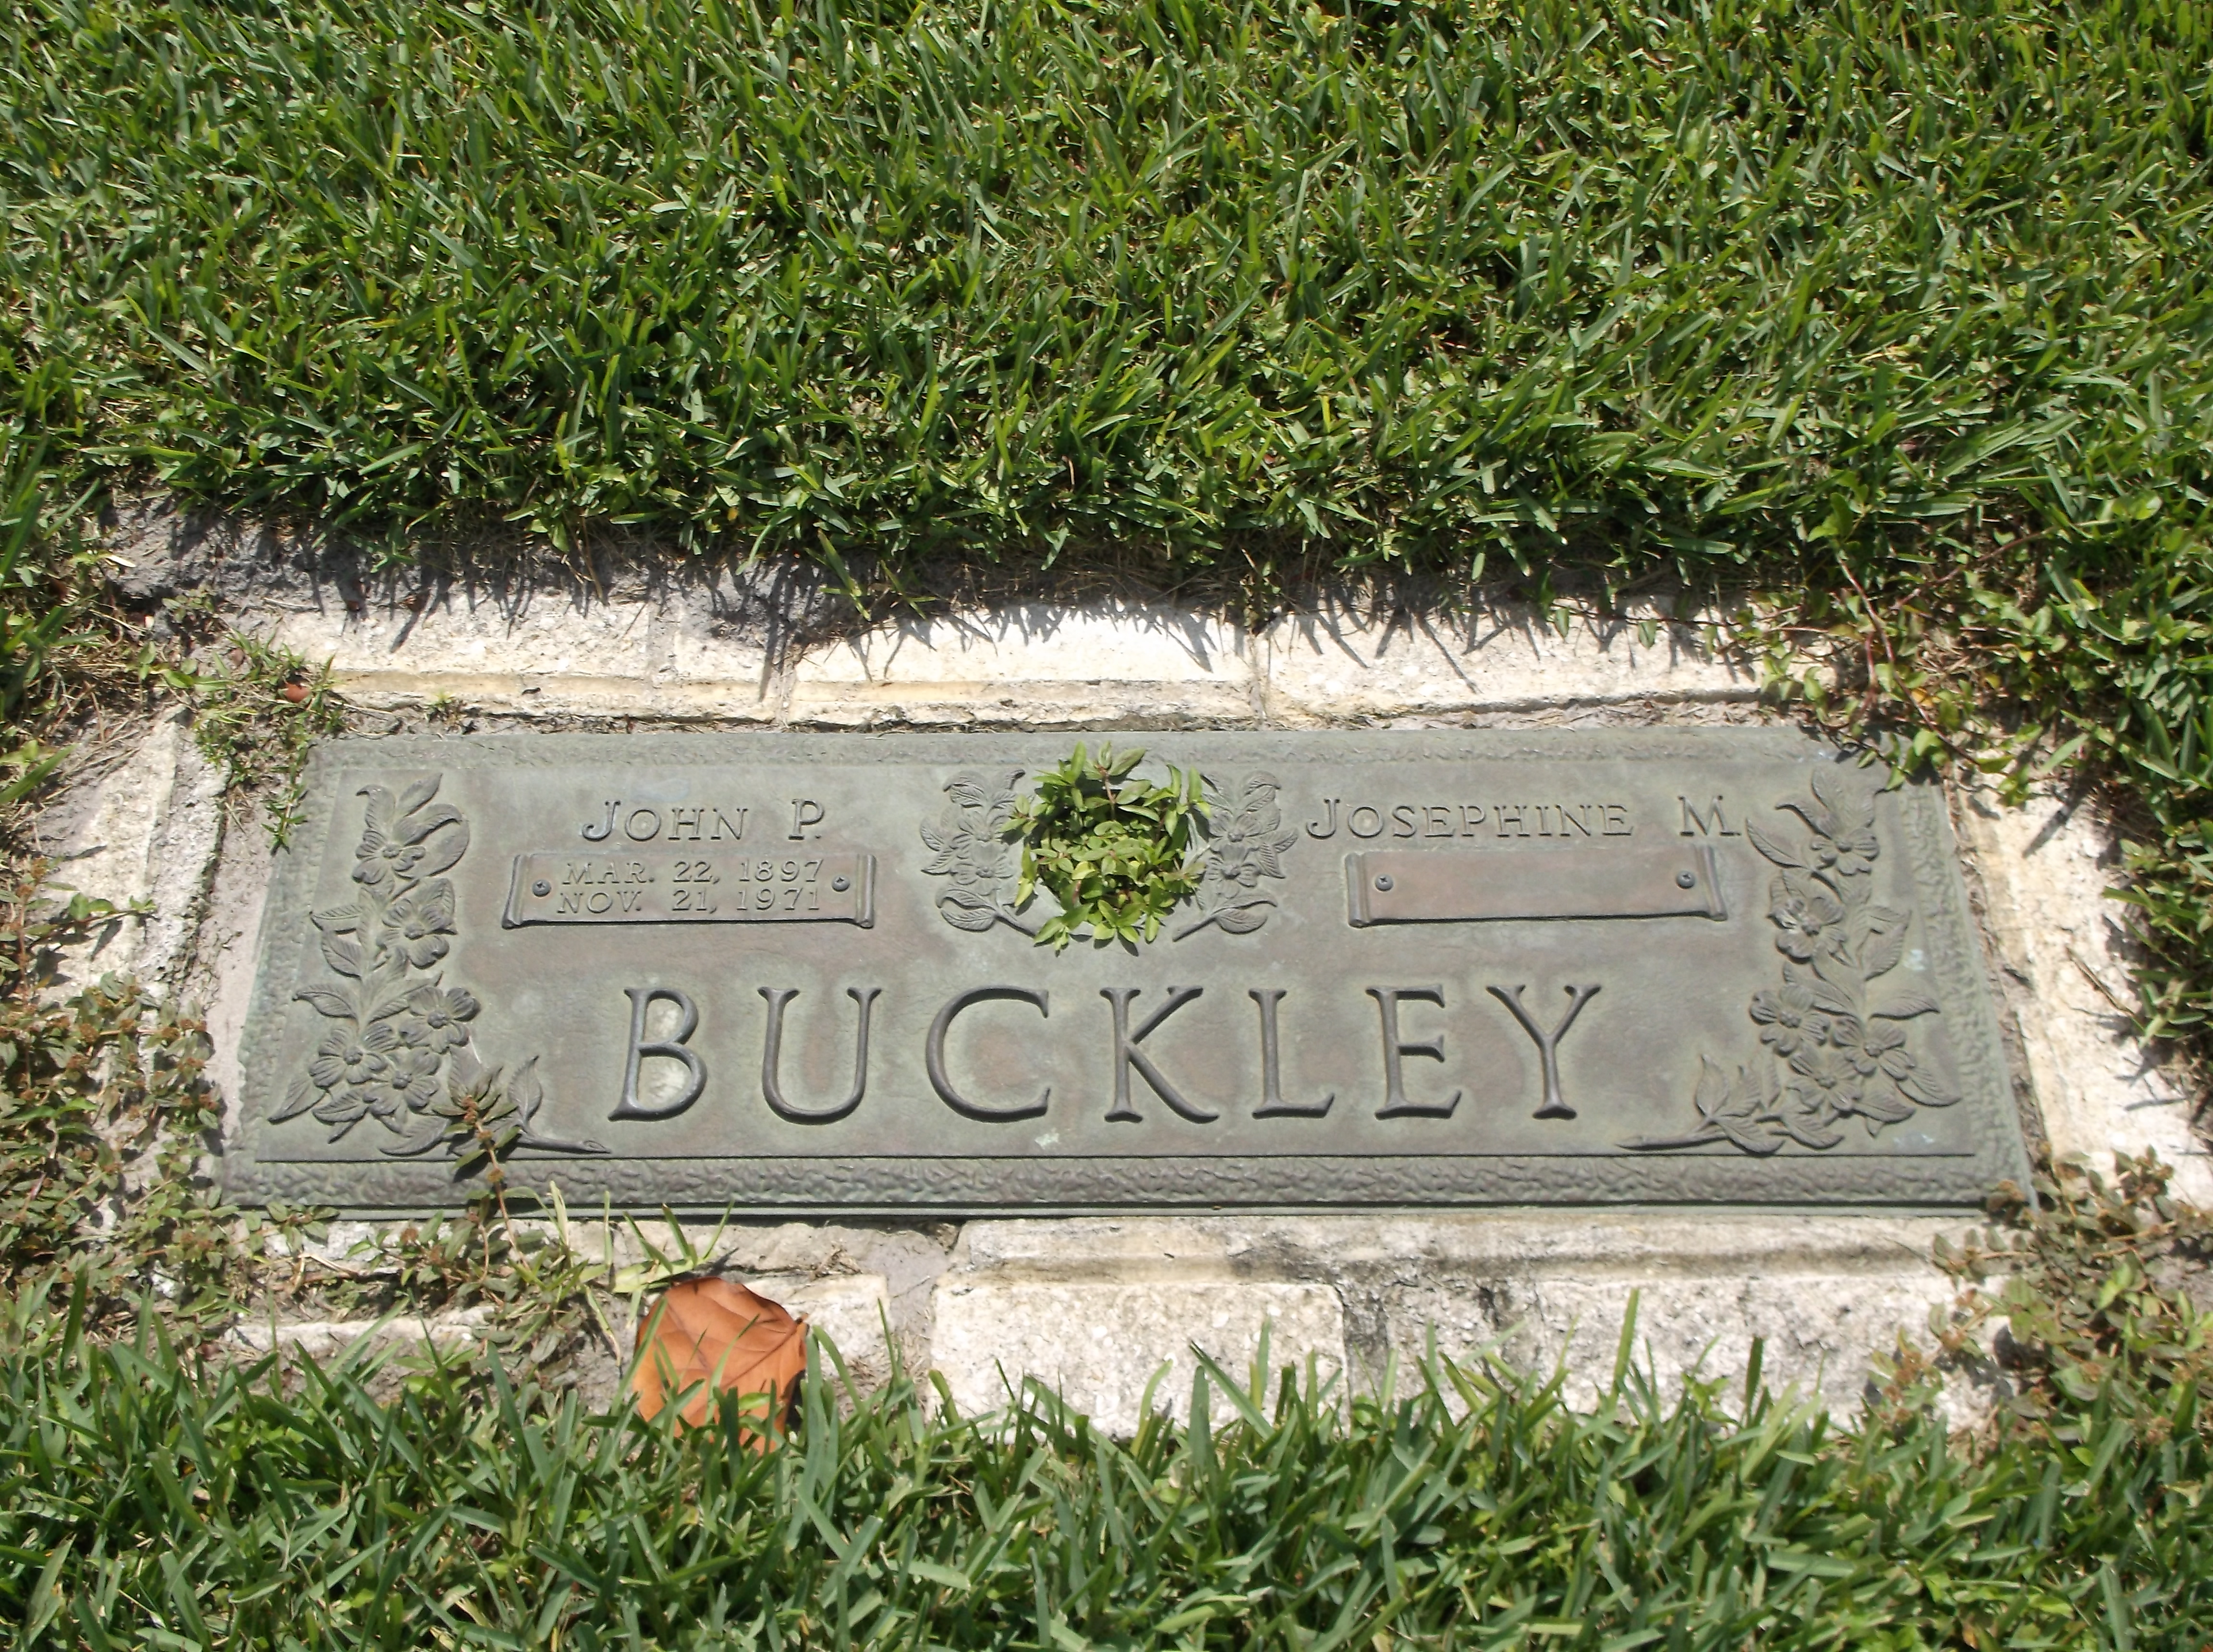 John P Buckley